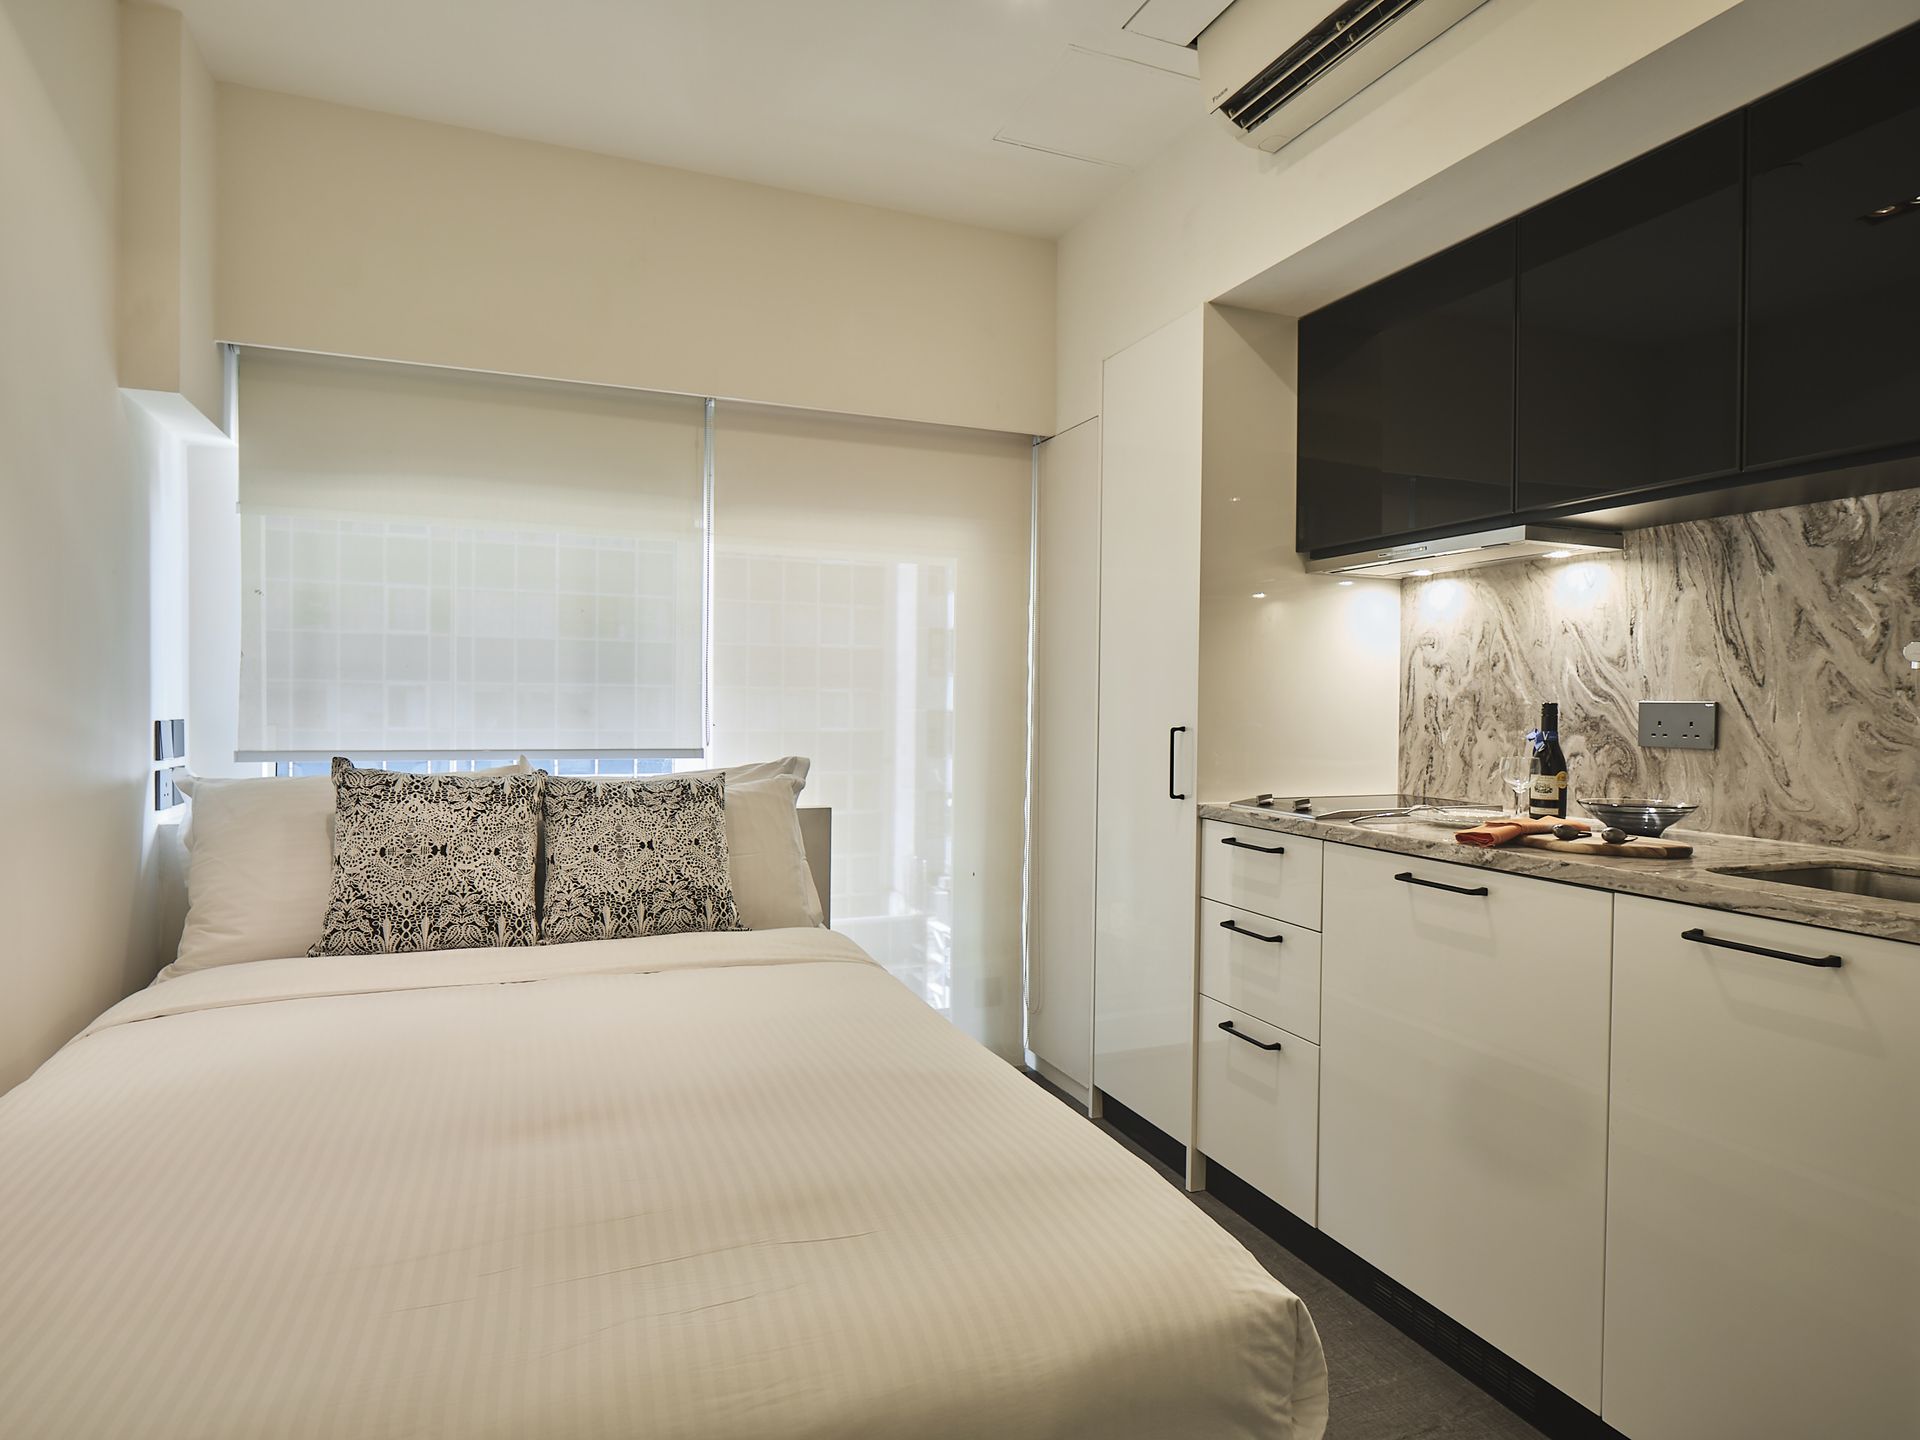 The V 銅鑼灣怡和街服務式住宅開放式客房